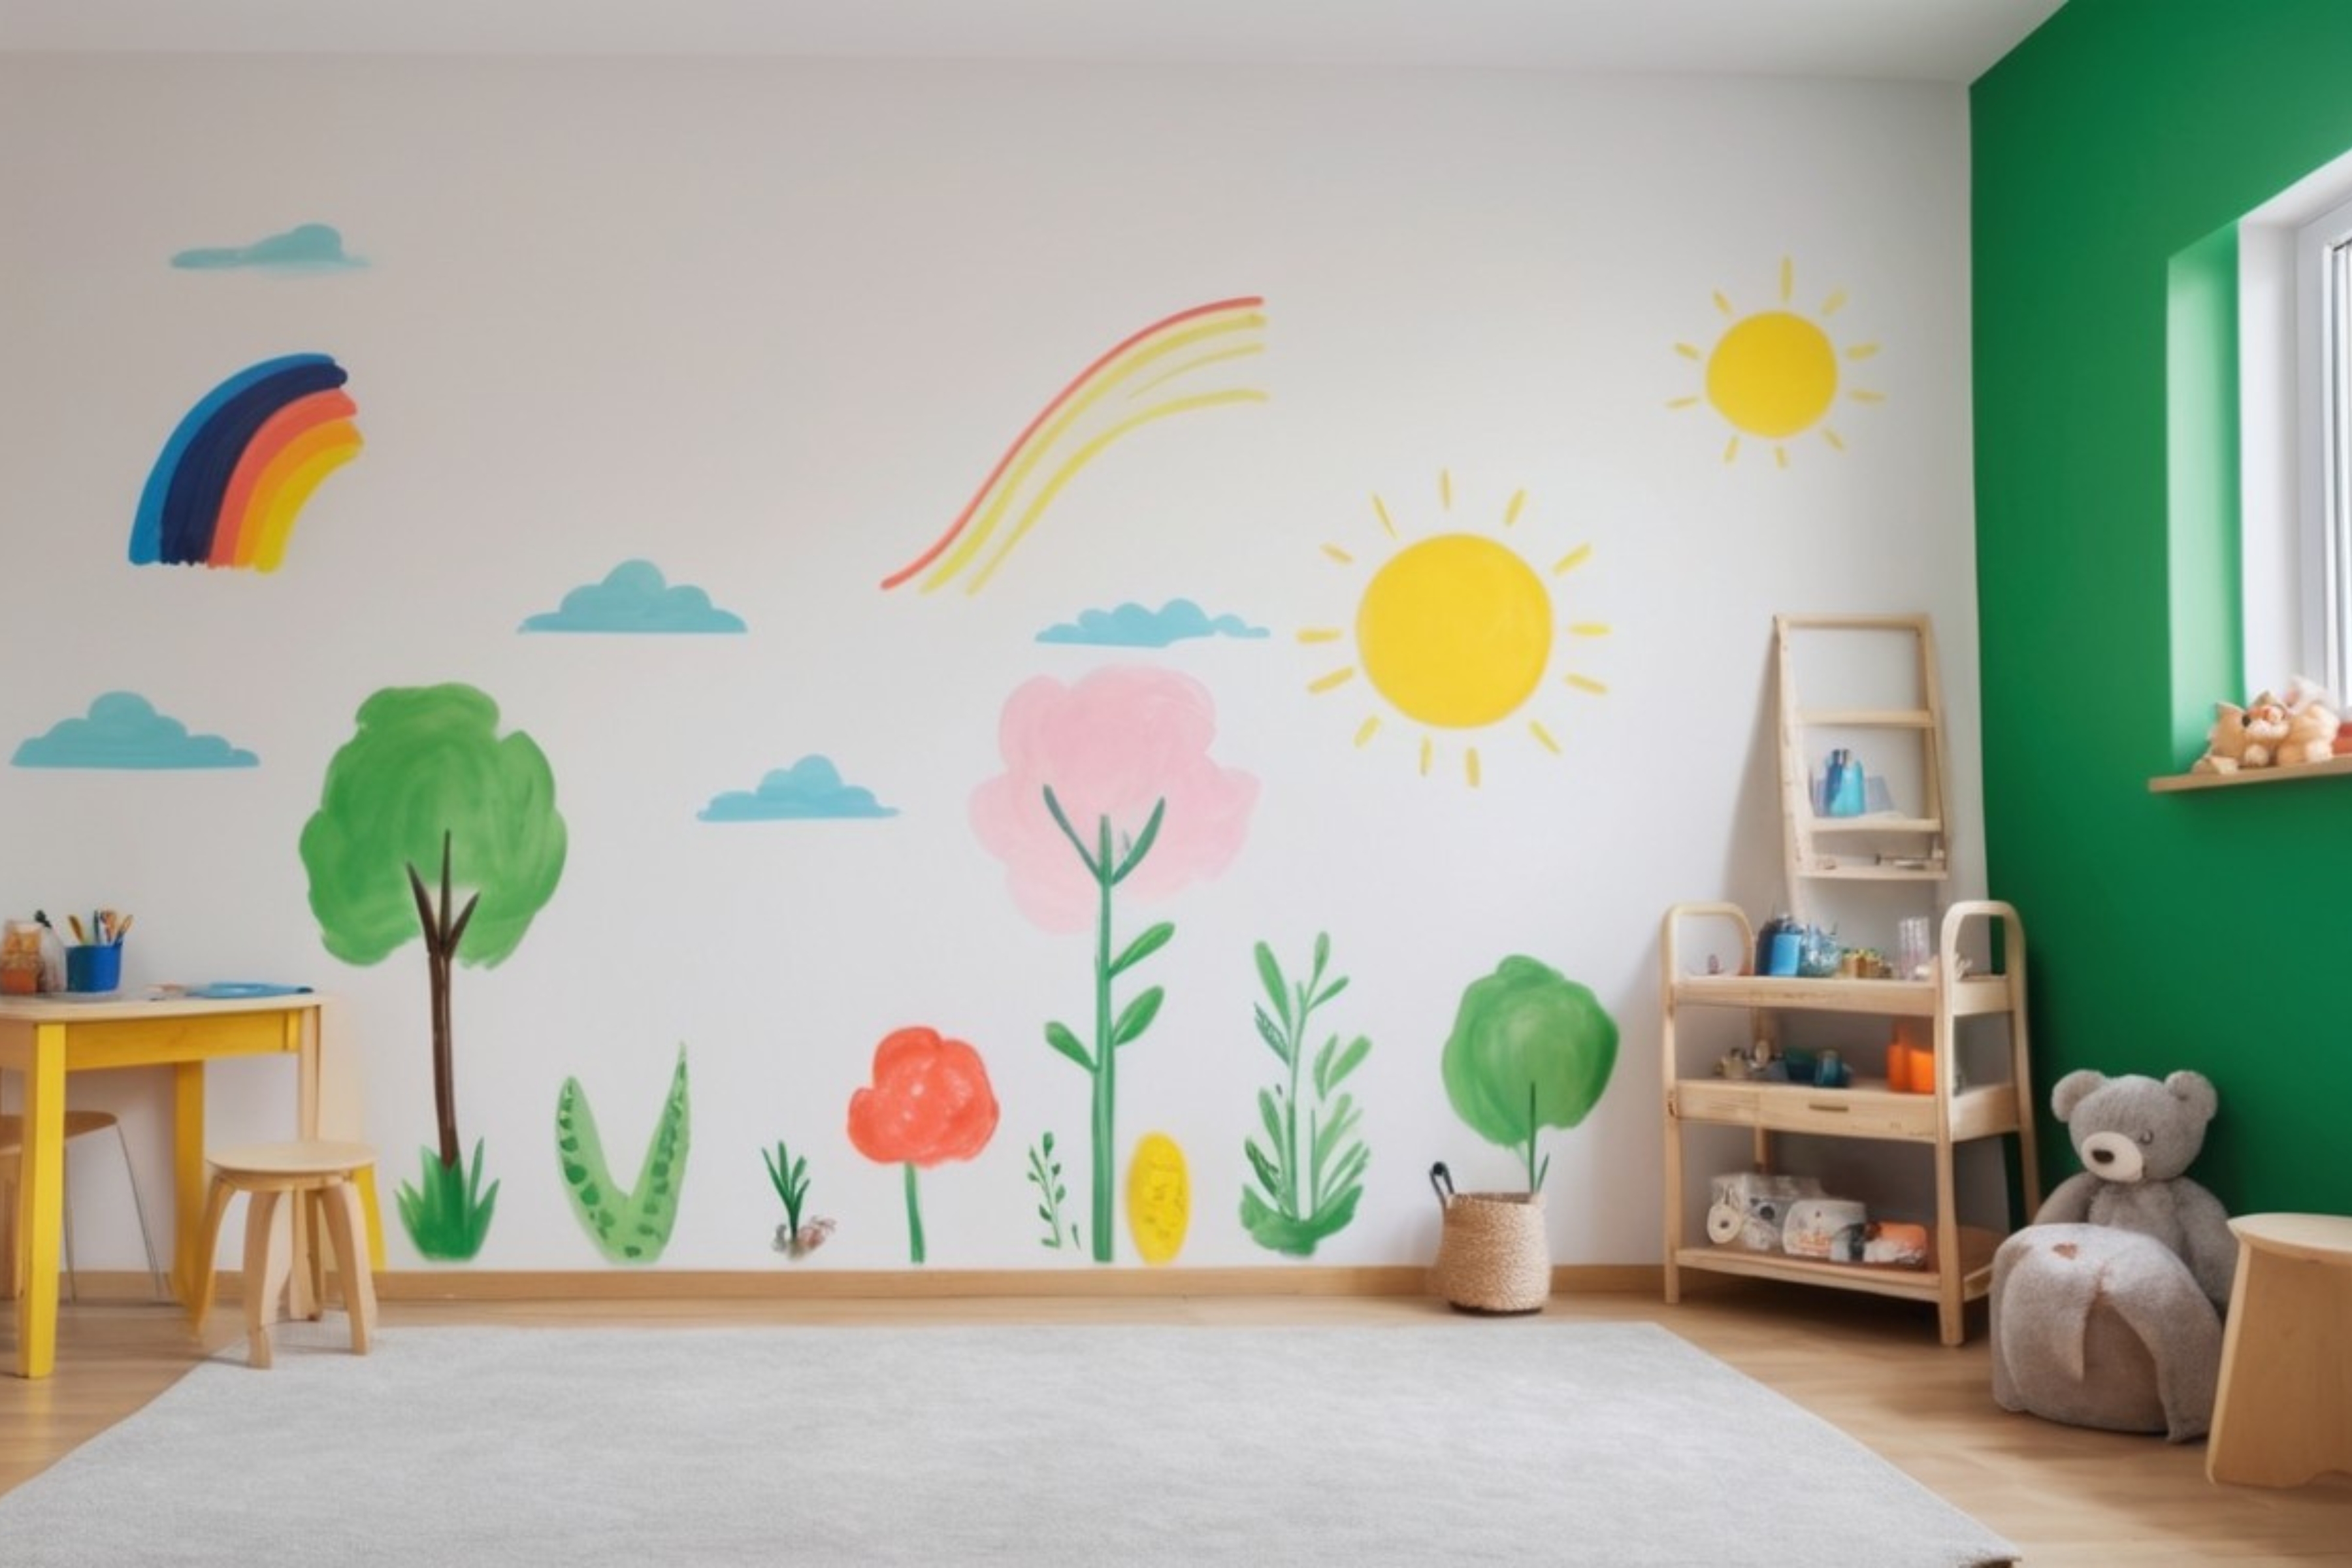 DIY faldekorációs projekt a gyerekszobában, ahol a szülők és gyerekek együtt festenek, hangsúlyozva a közös kreatív tevékenység fontosságát.